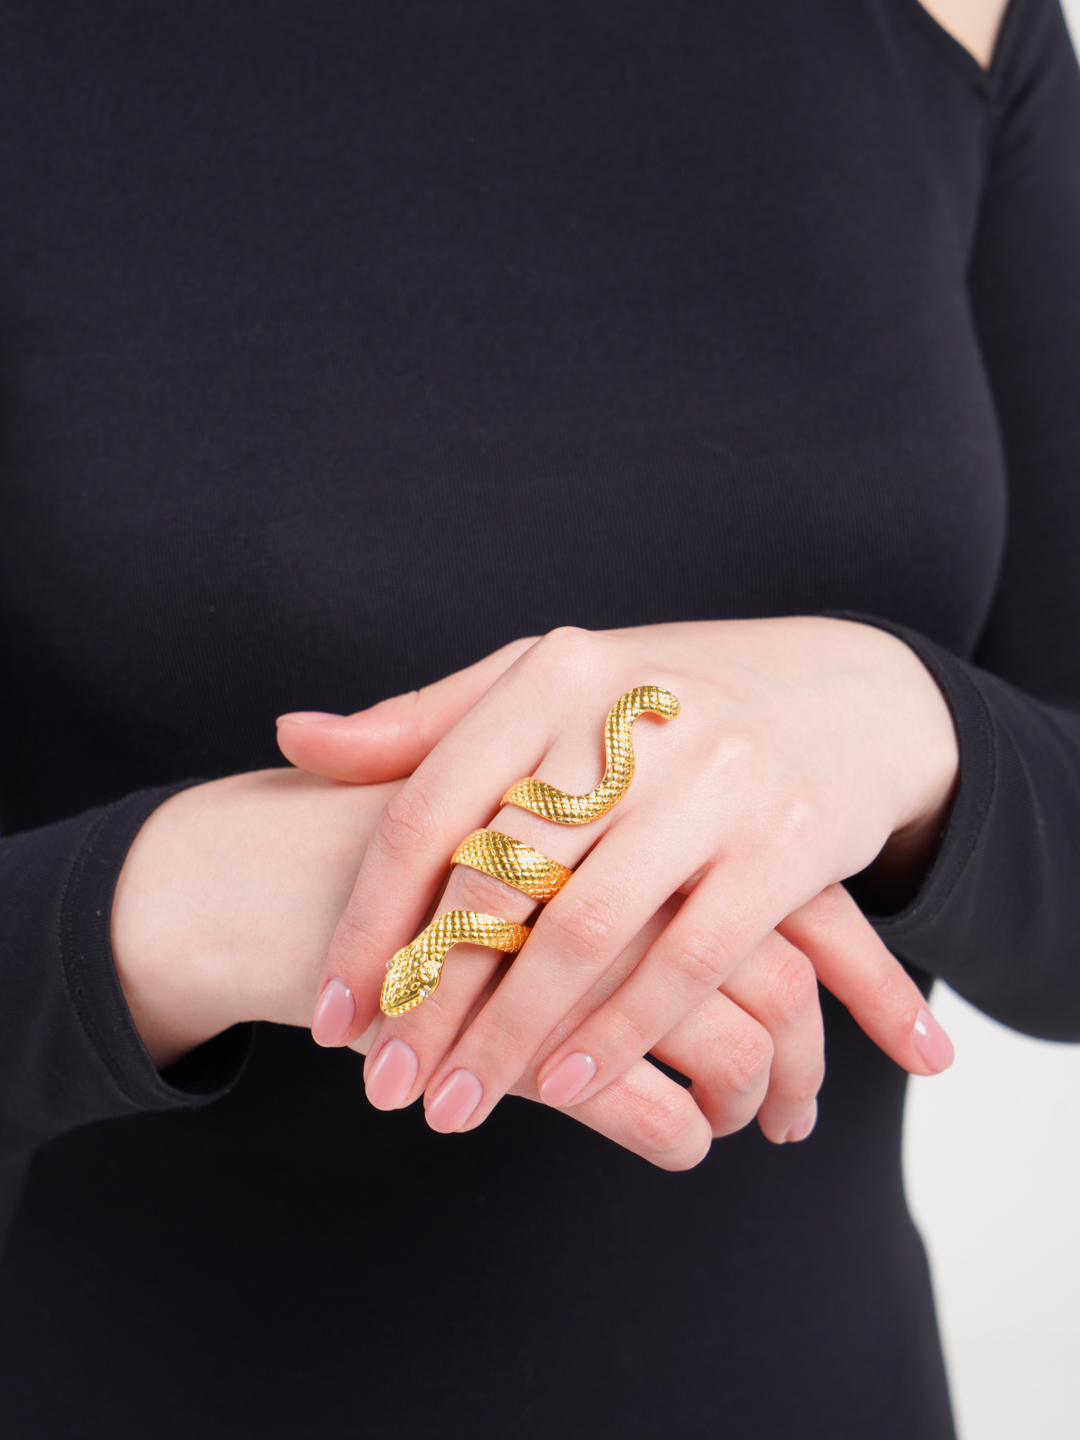 Кольцо "Змея" массивное, на весь палец купить по цене 147 ₽ в интернет-магазине KazanExpress